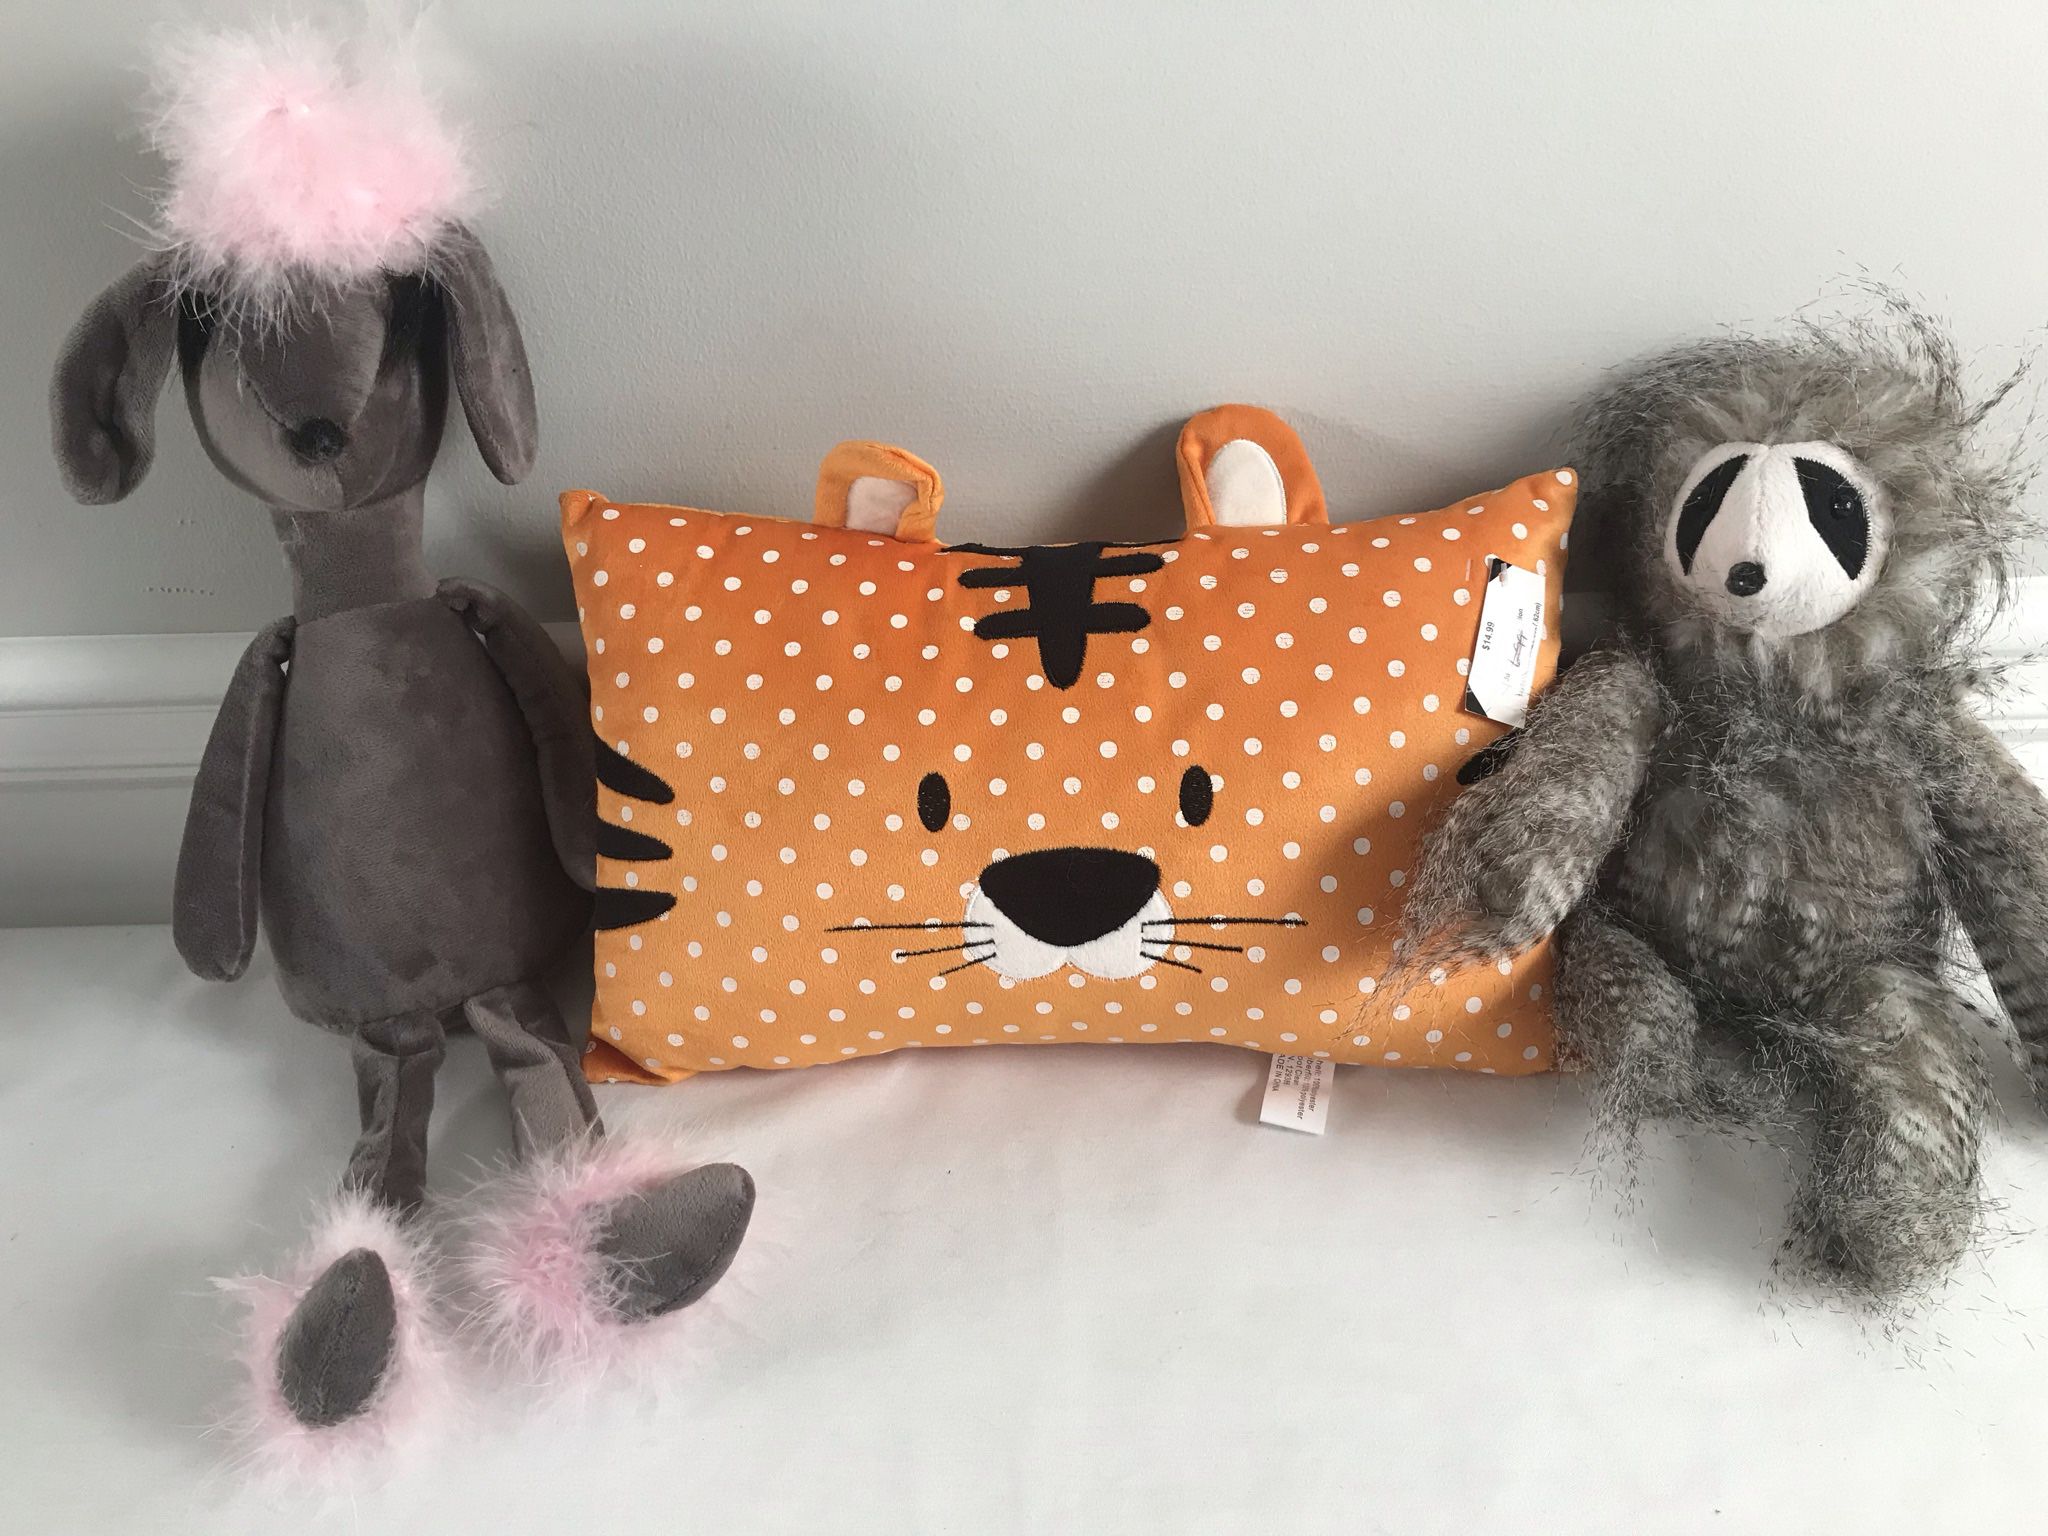 Children’s Pillow & Stuffed Animals